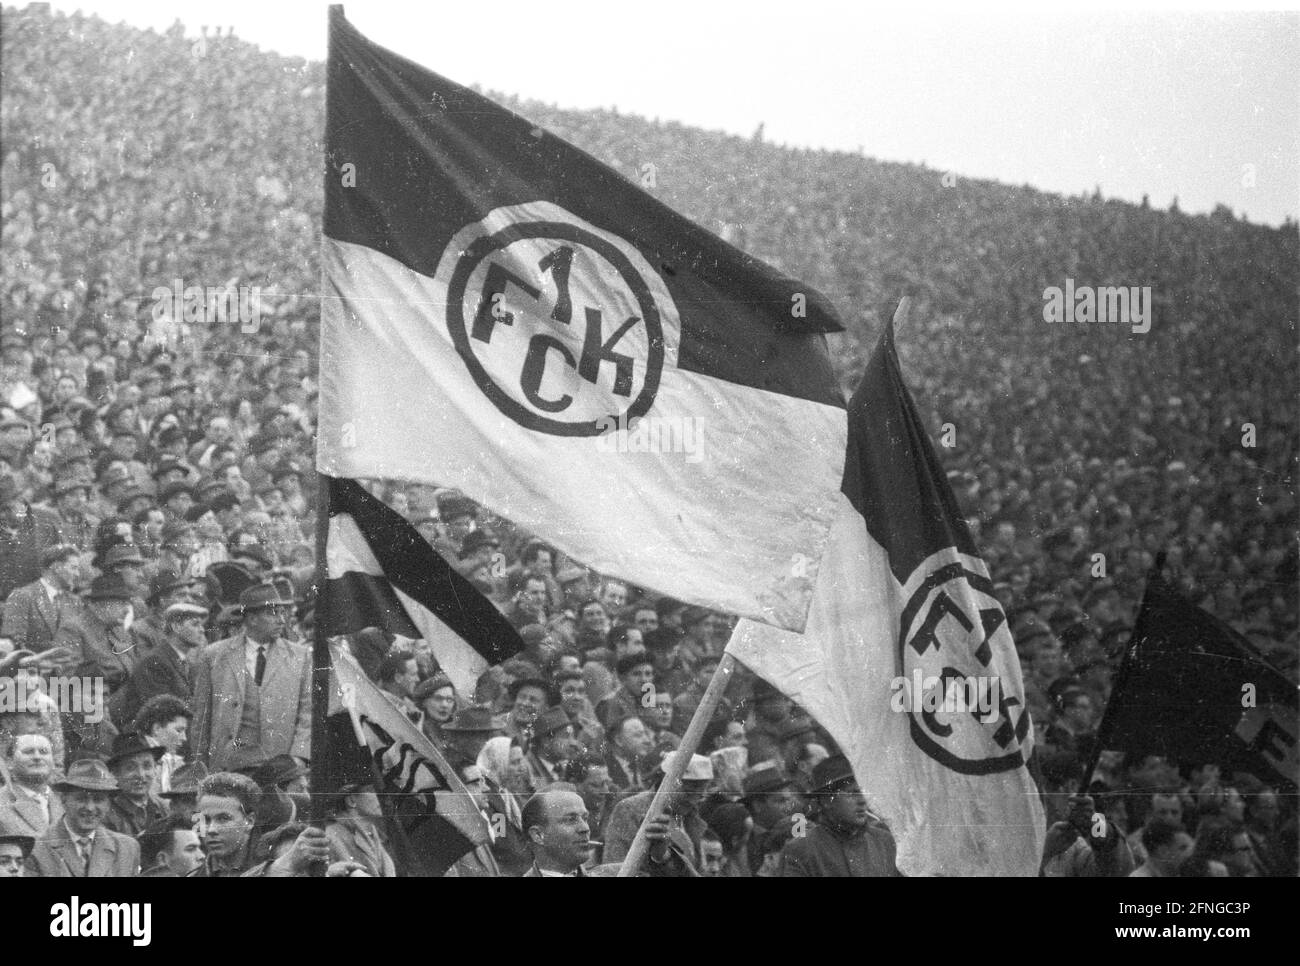 Ripetere le qualifiche per il turno finale: 1 FC Kaiserslautern - 1. FC Köln a Francoforte 0:3 su 20.04.1958 / spettatori con FCK - bandiera (Kaiserslautern) [traduzione automatizzata] Foto Stock